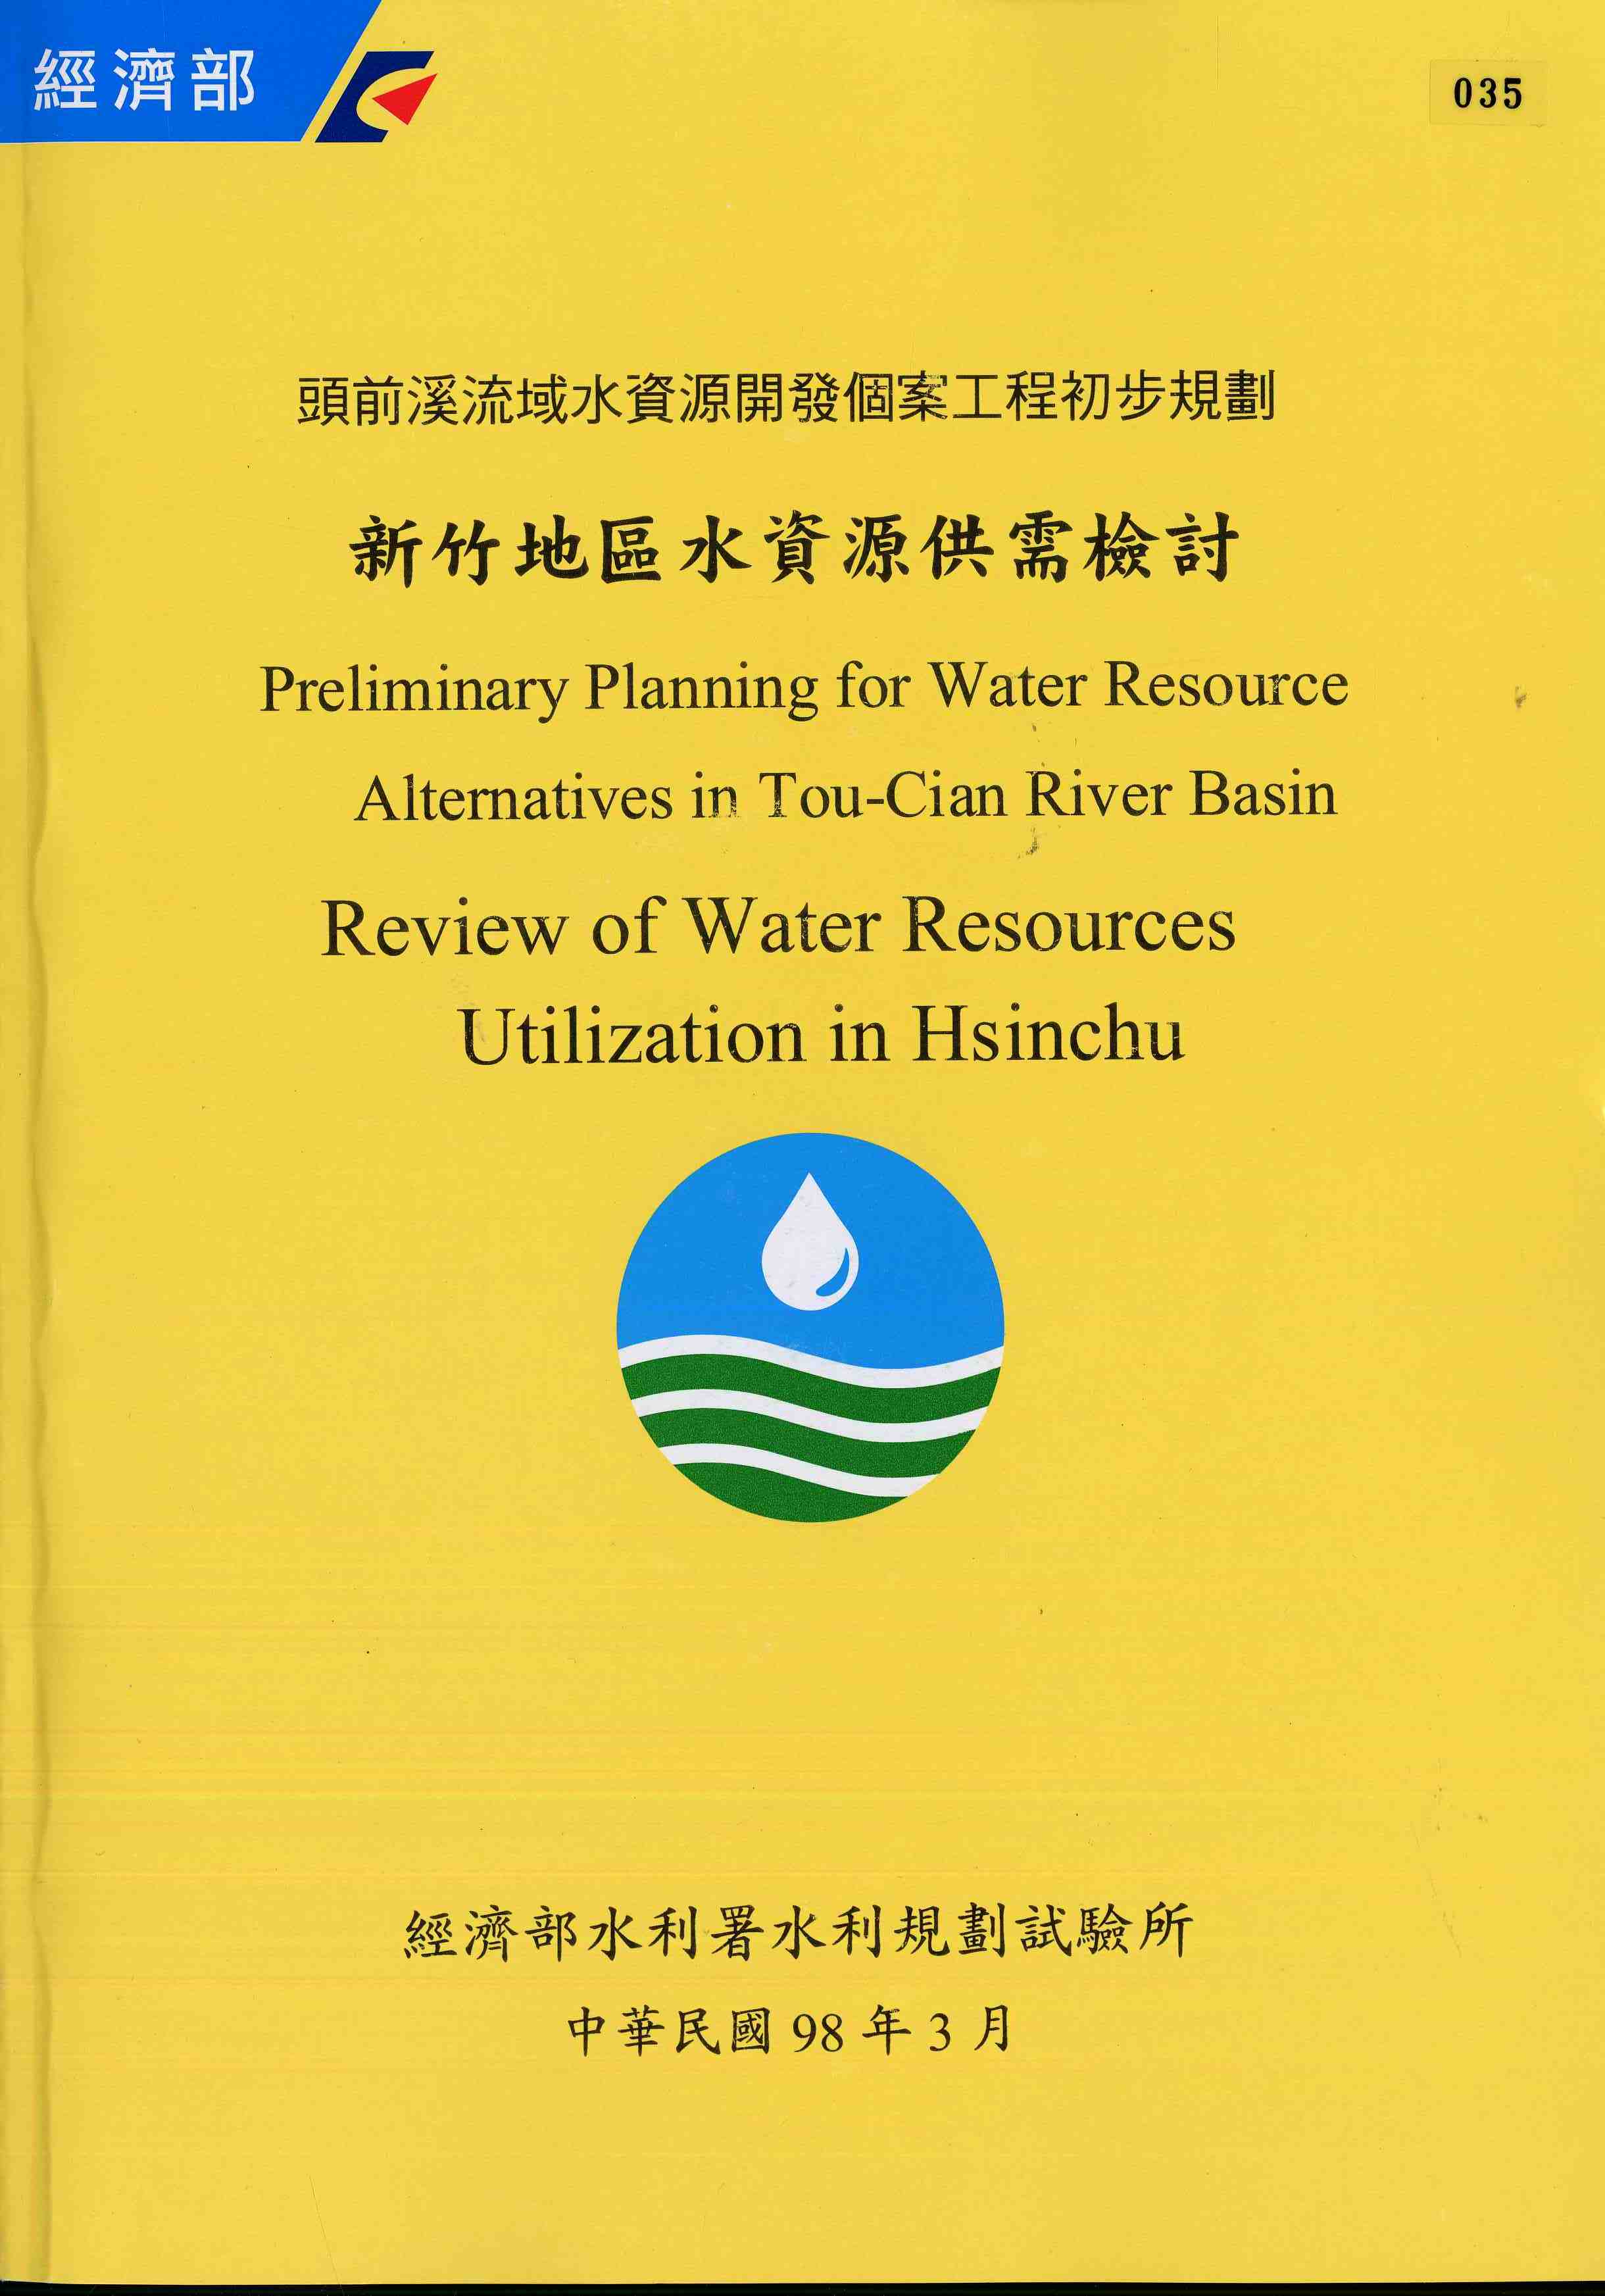 頭前溪流域水資源開發個案工程初步規劃-新竹地區水資源供需檢討